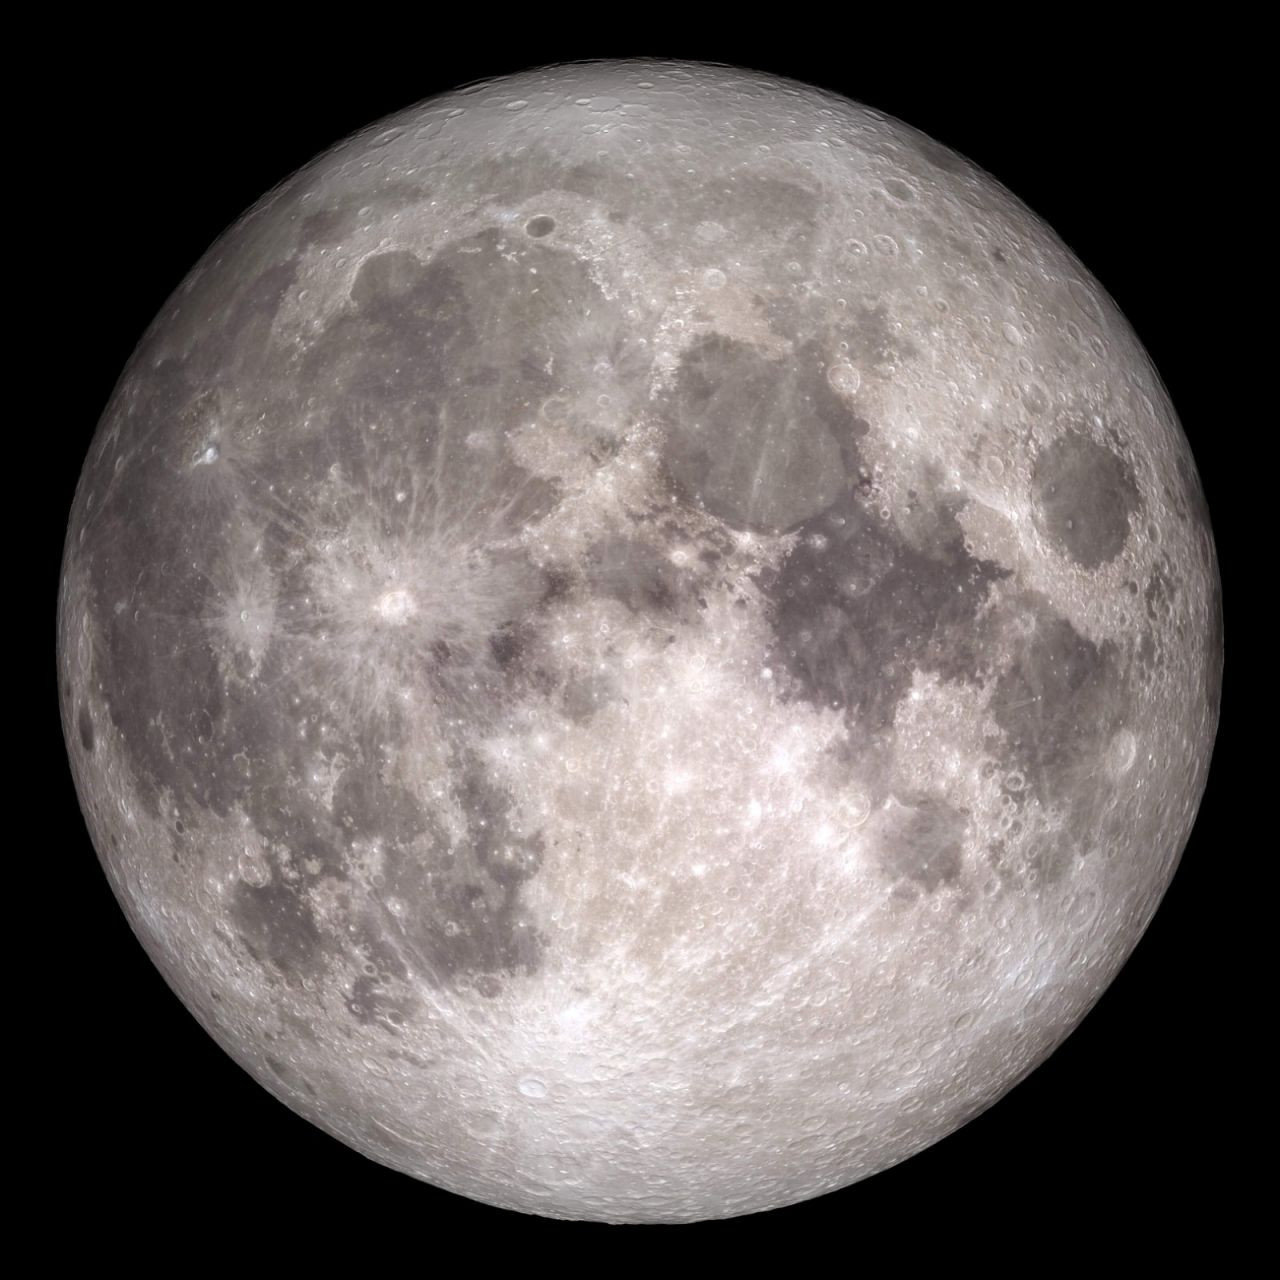 Uzay aracı yörüngeye yerleşti: Ay yüzeyinden yeni görüntüler geldi - Sayfa 3